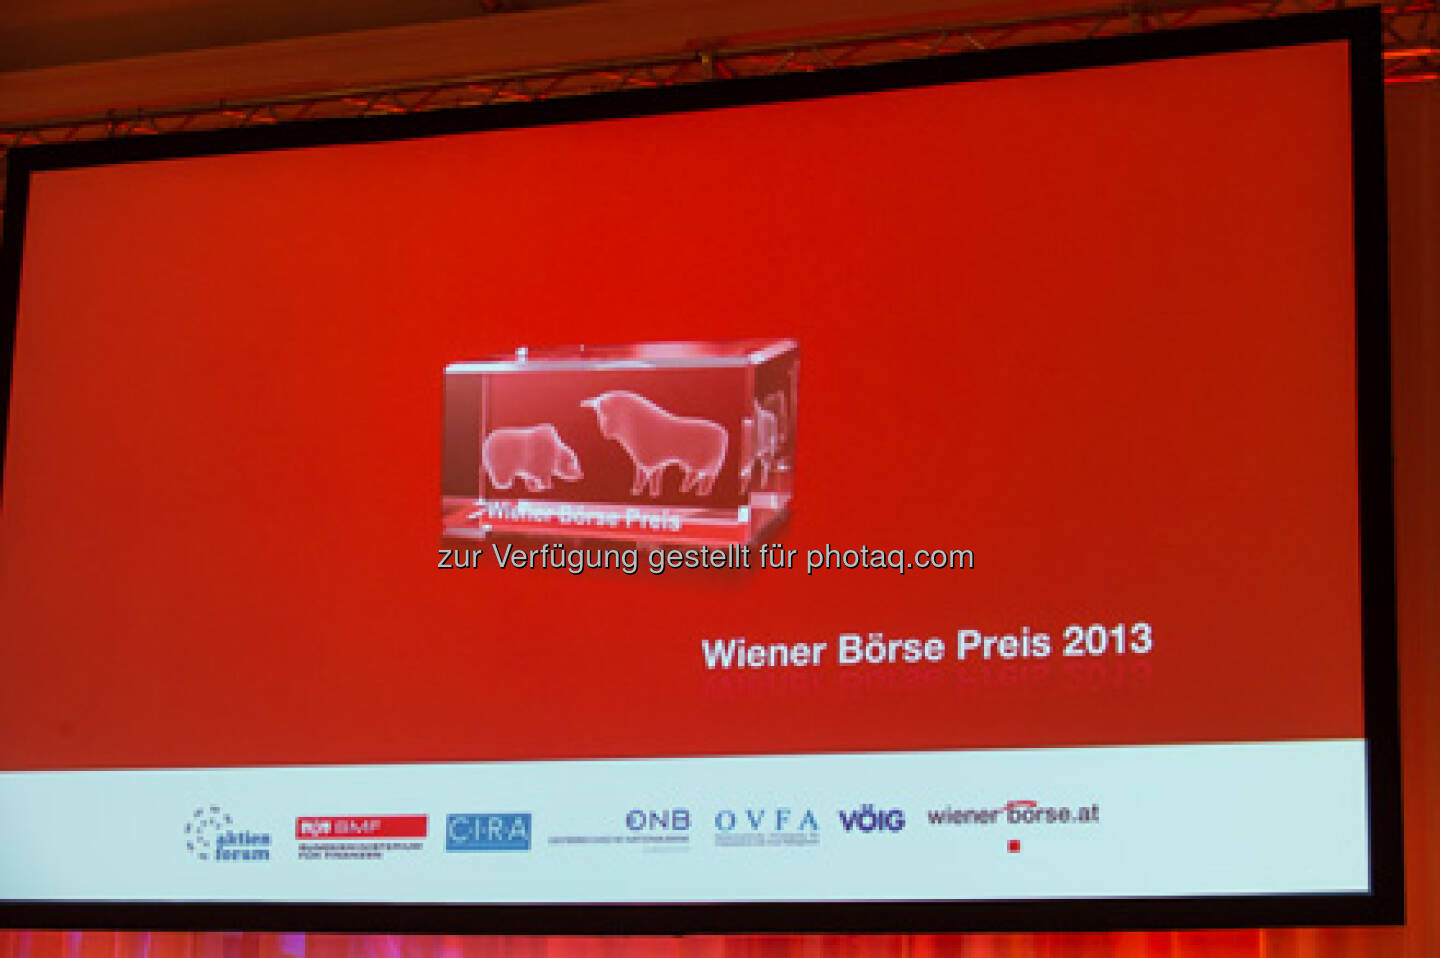 WIener Börse Preis 2013